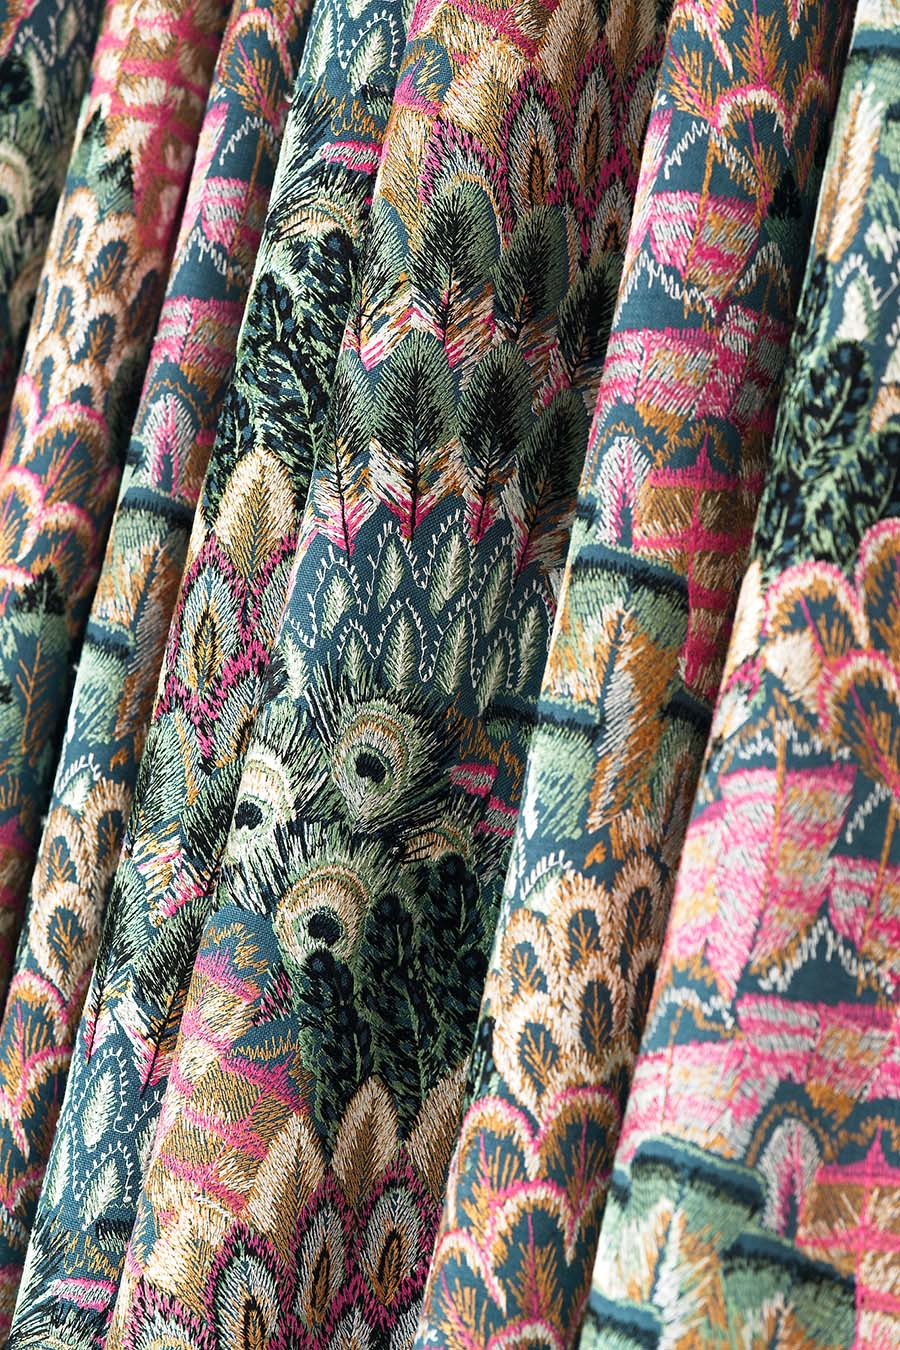 Blendworth textile